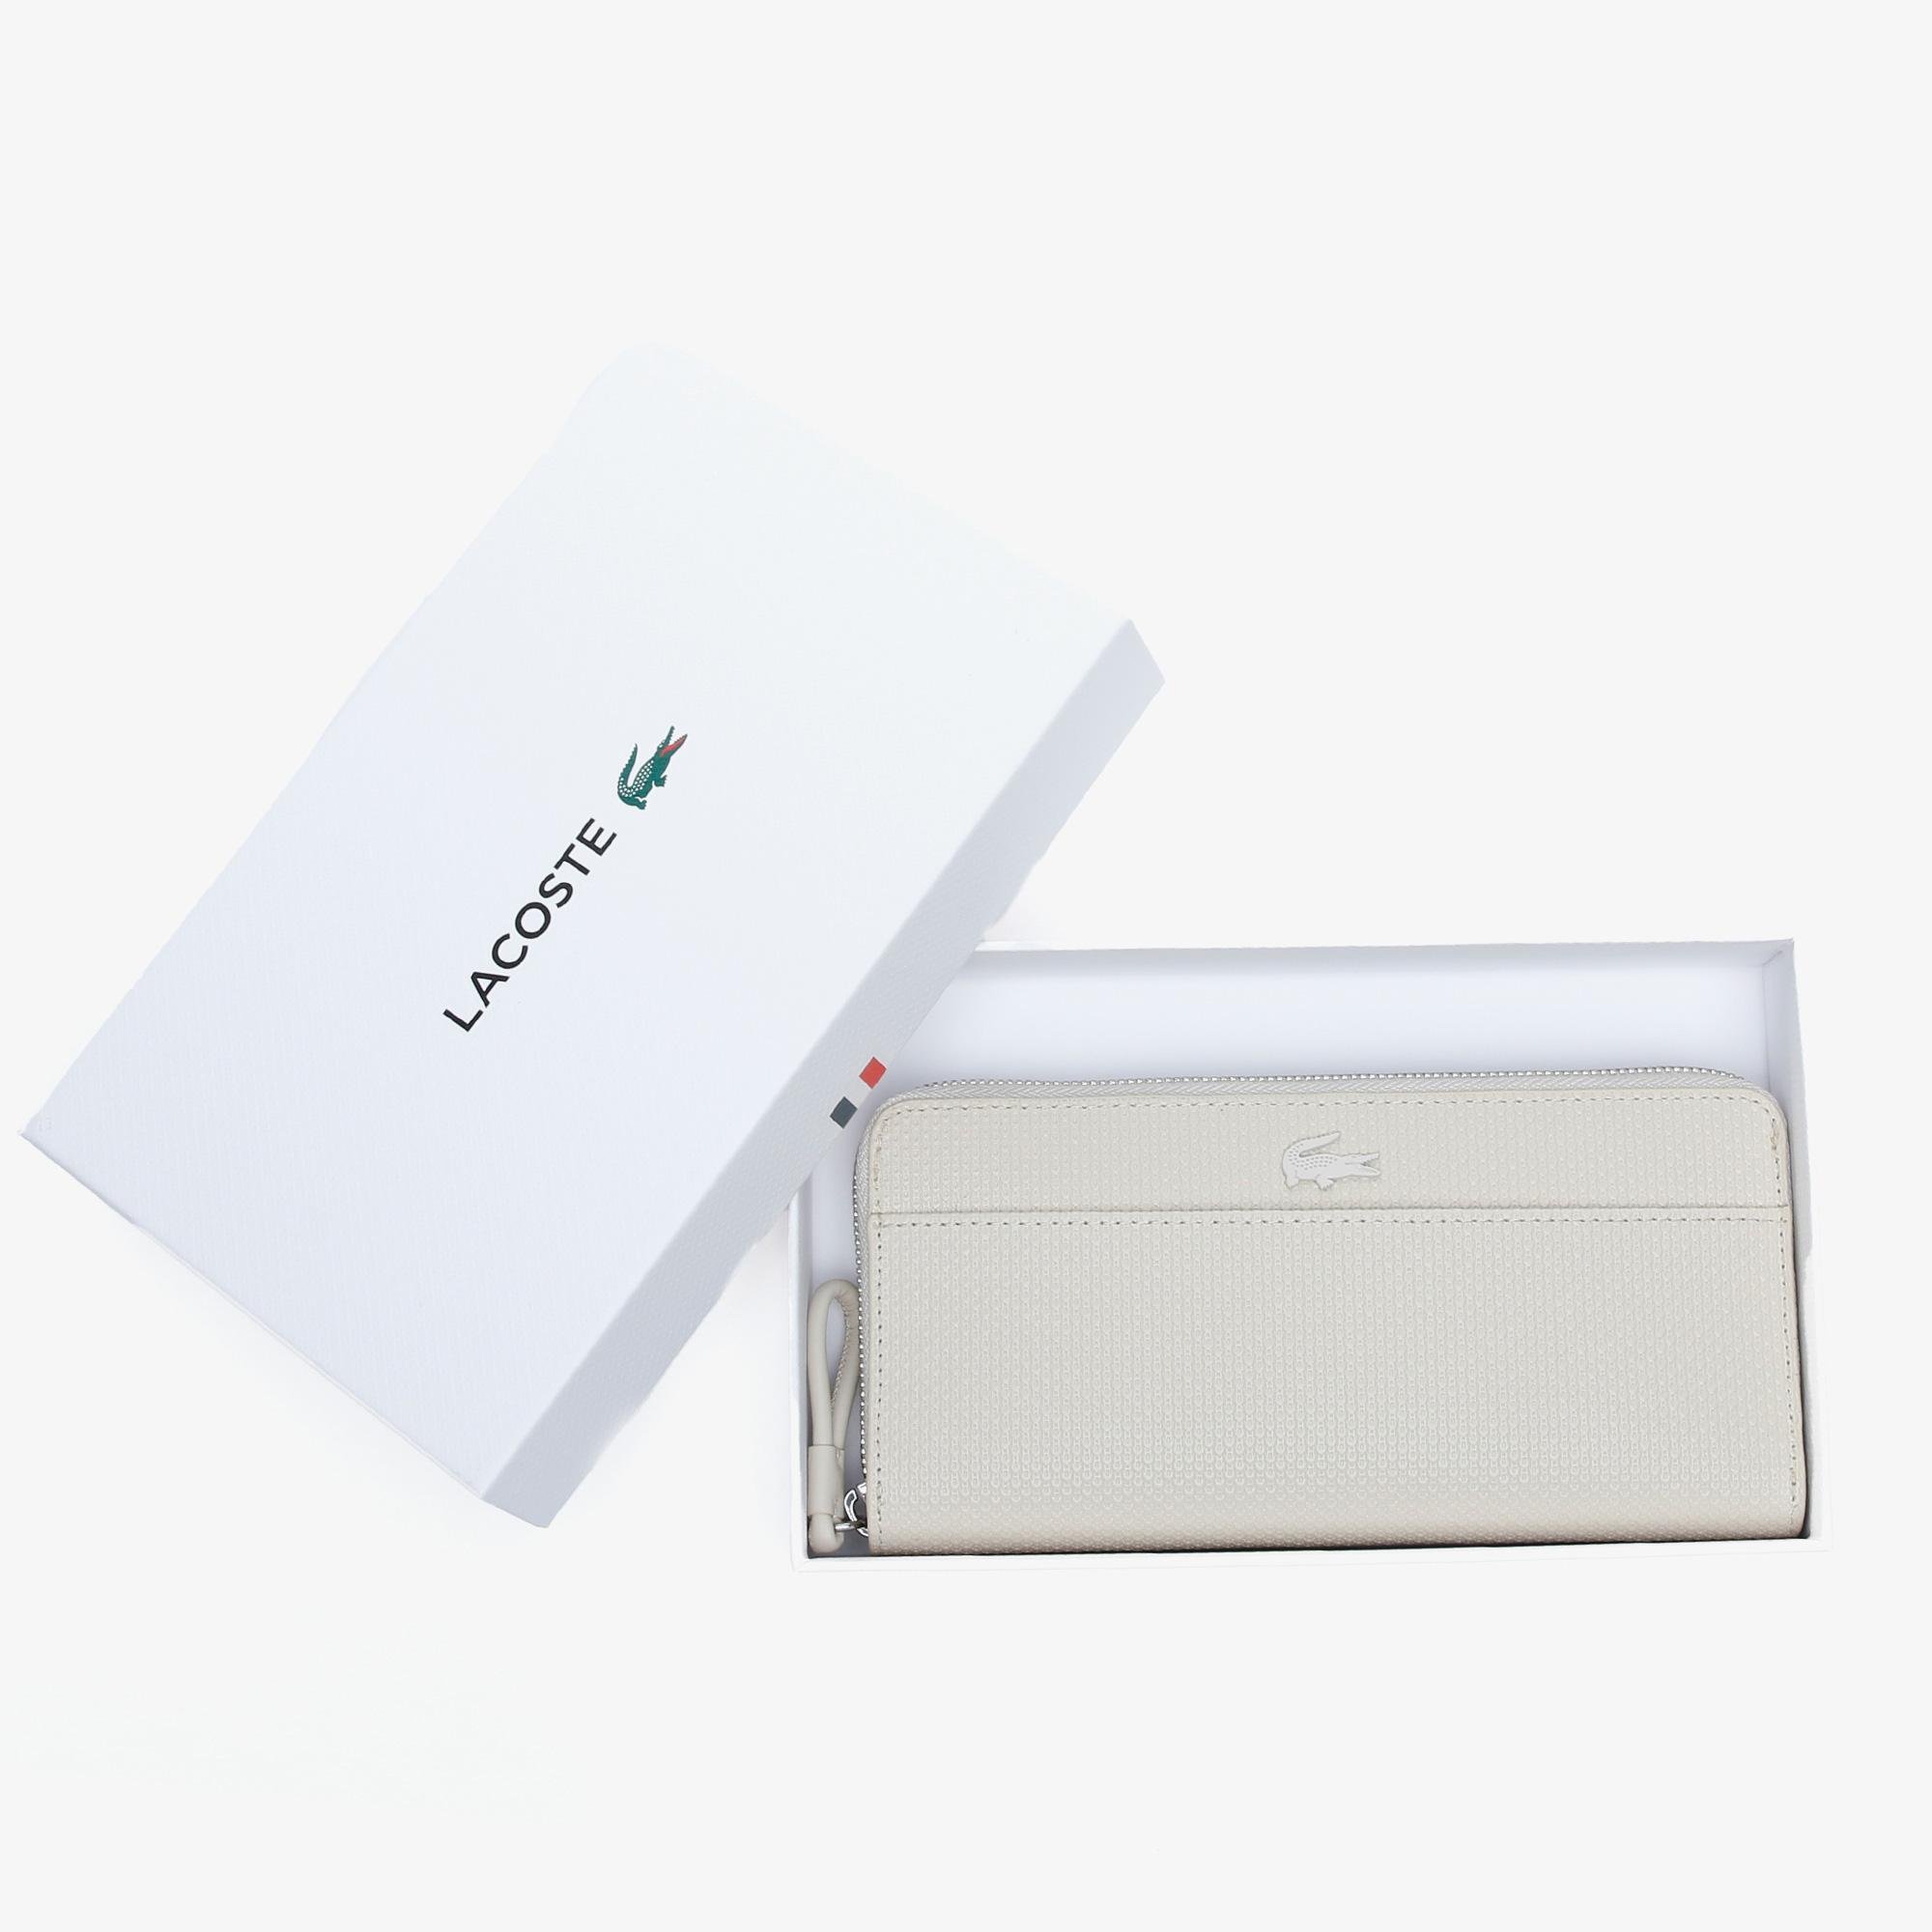 Lacoste Women's Chantaco Matte Piqué Leather Zip Wallet